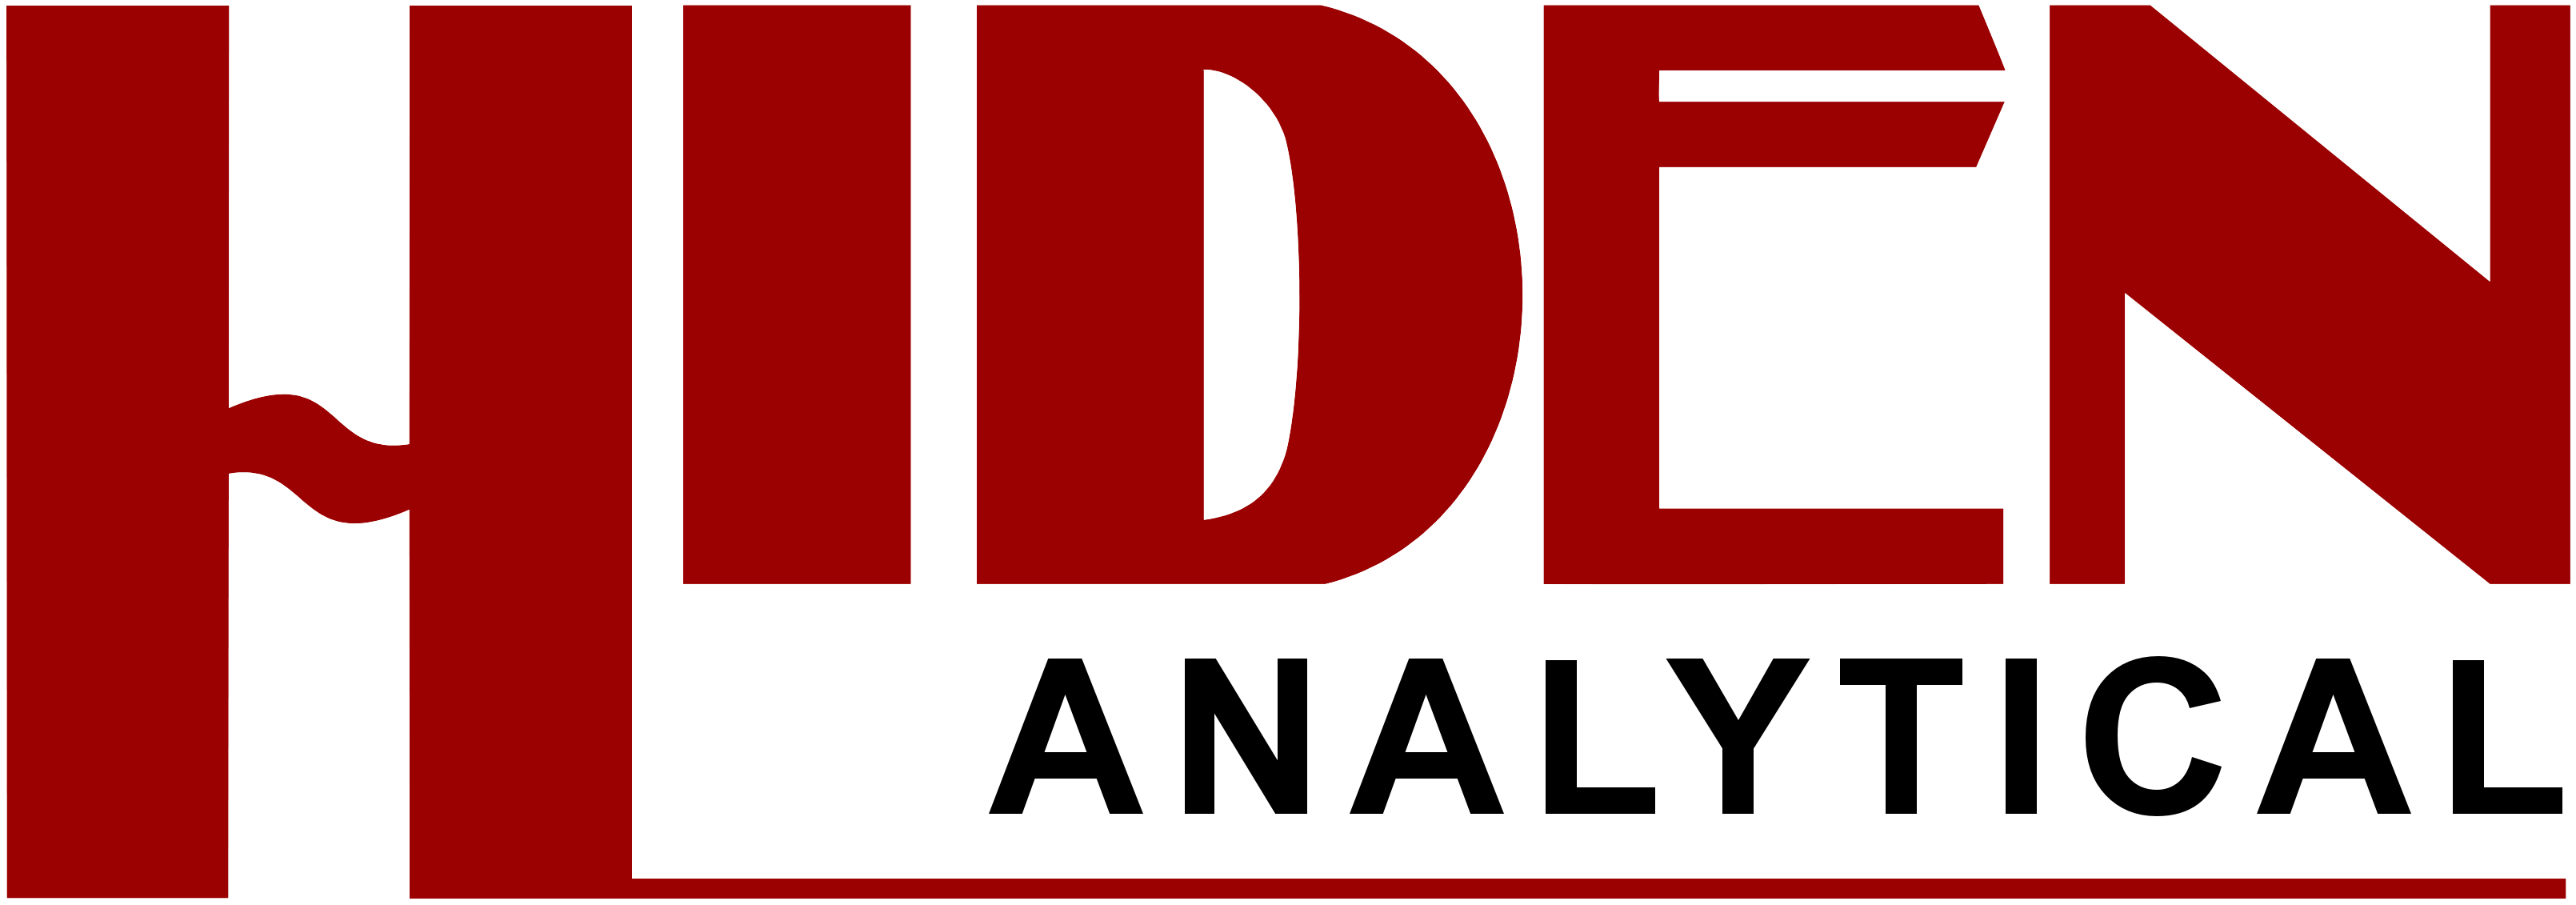 Hiden Analytical Ltd